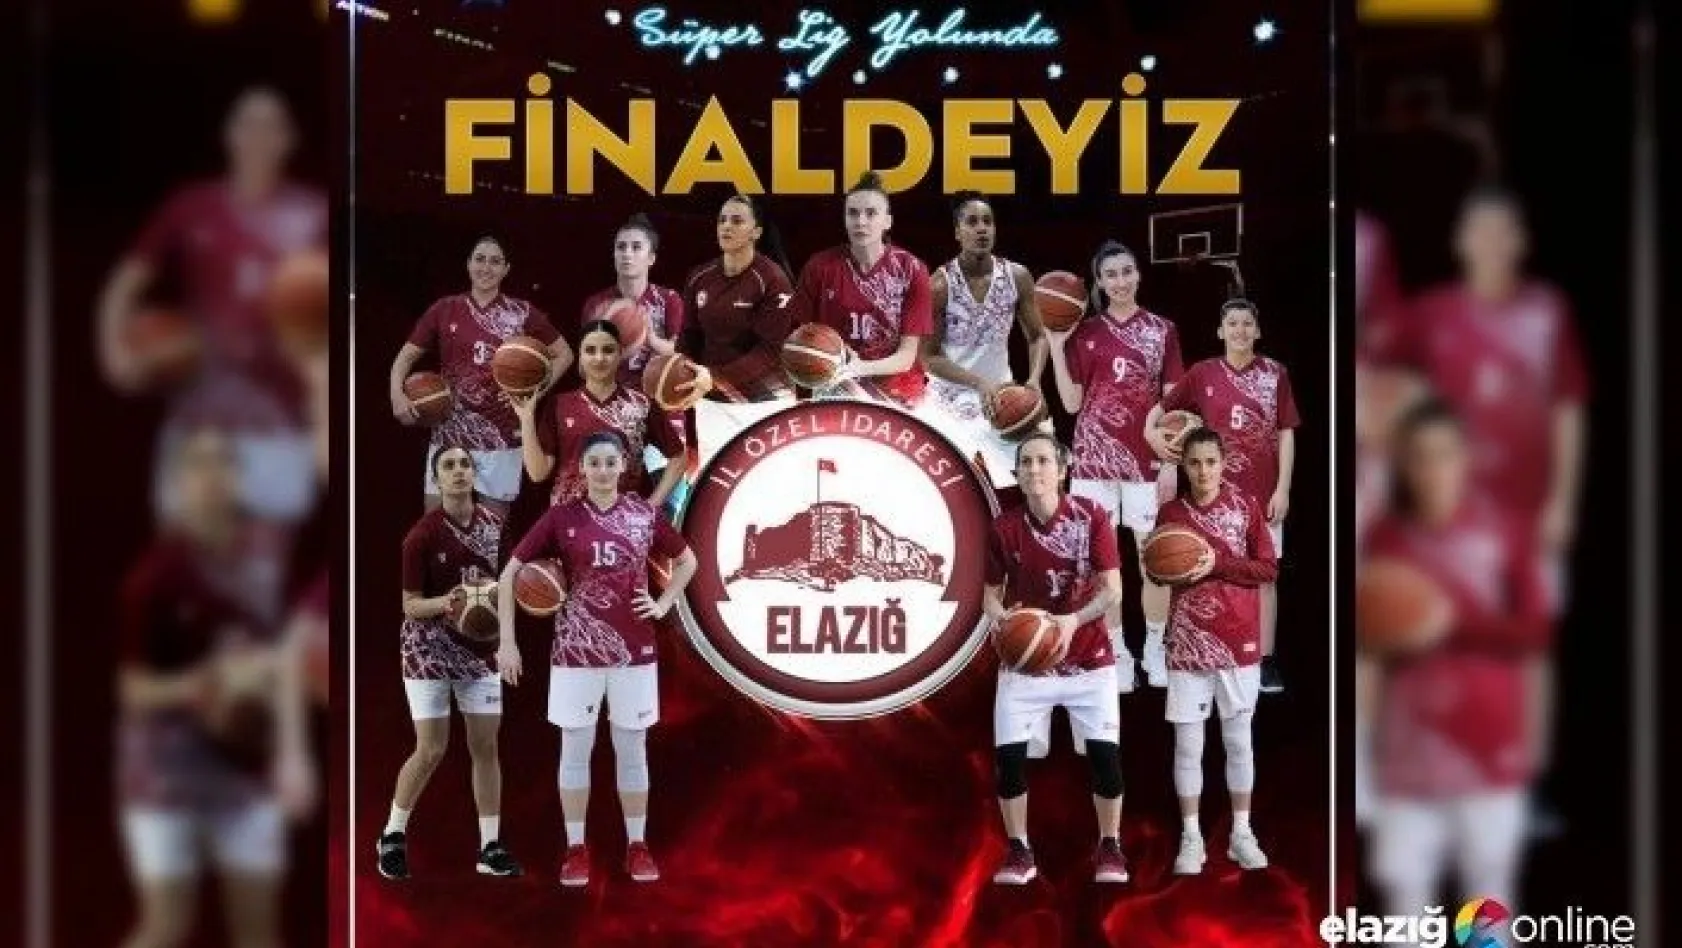 Elazığ'ın Perileri'nin final maçı 9 Mayıs'ta Elazığ'da!